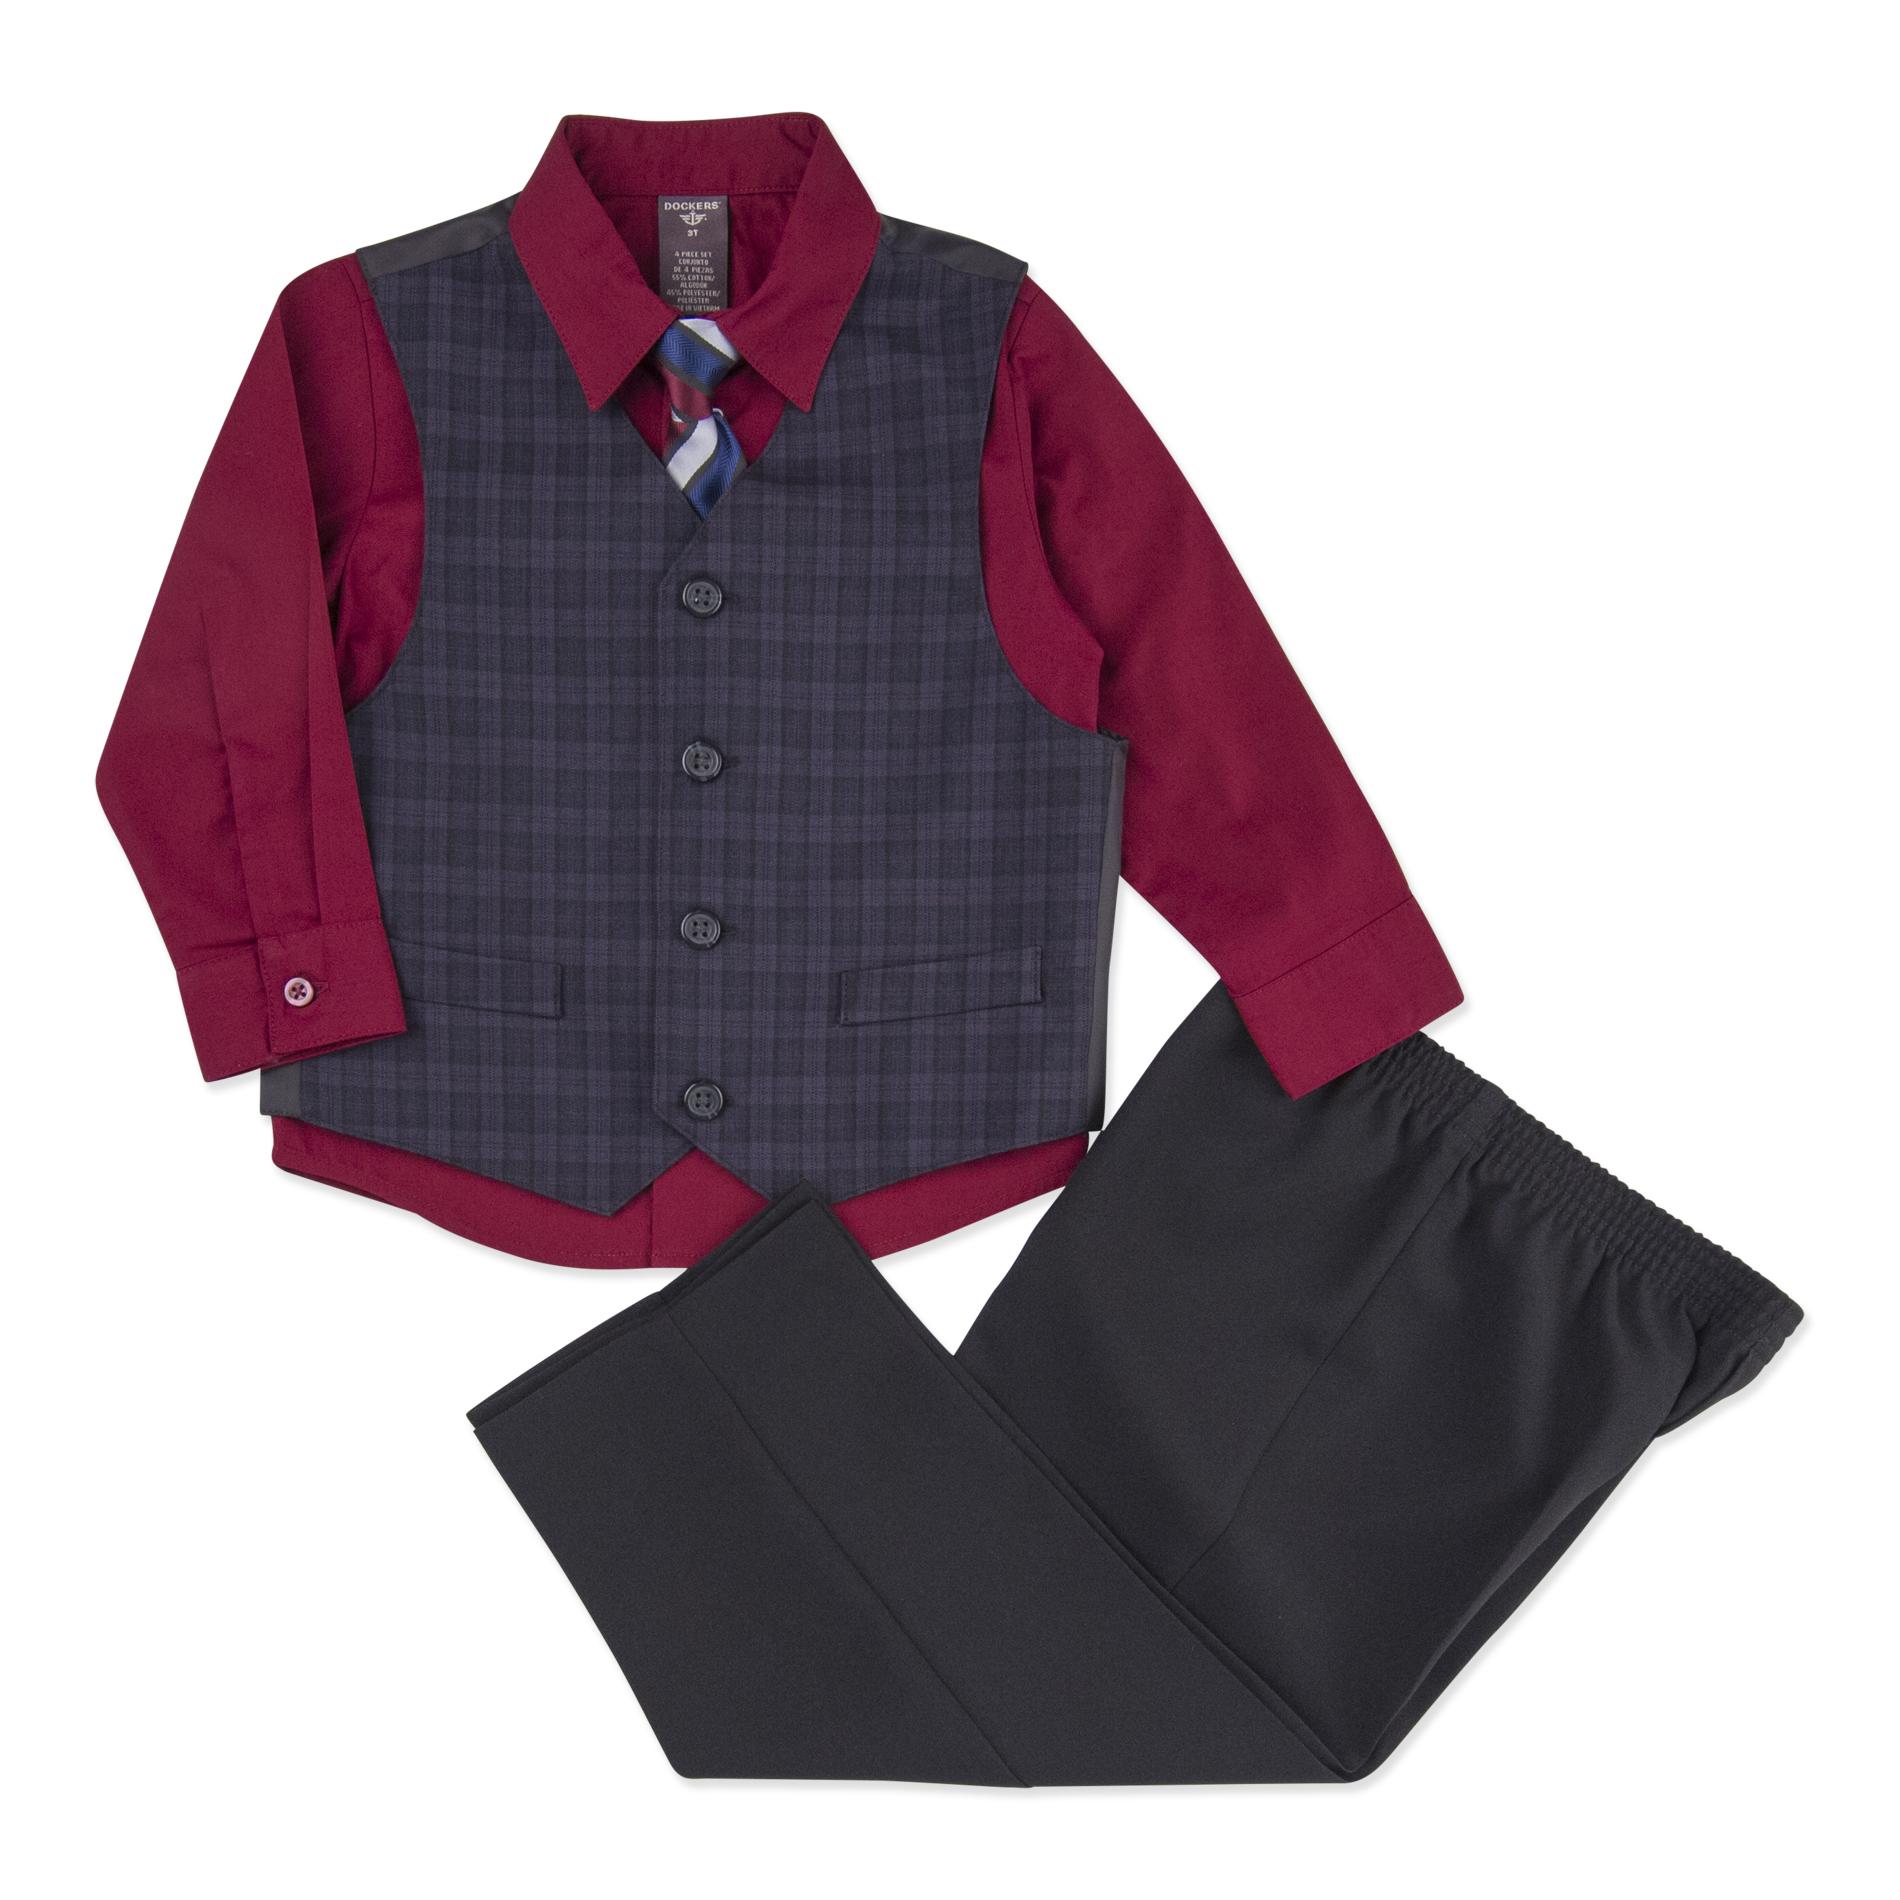 Dockers Infant & Toddler Boy's Vest  Shirt  Necktie & Pants - Plaid